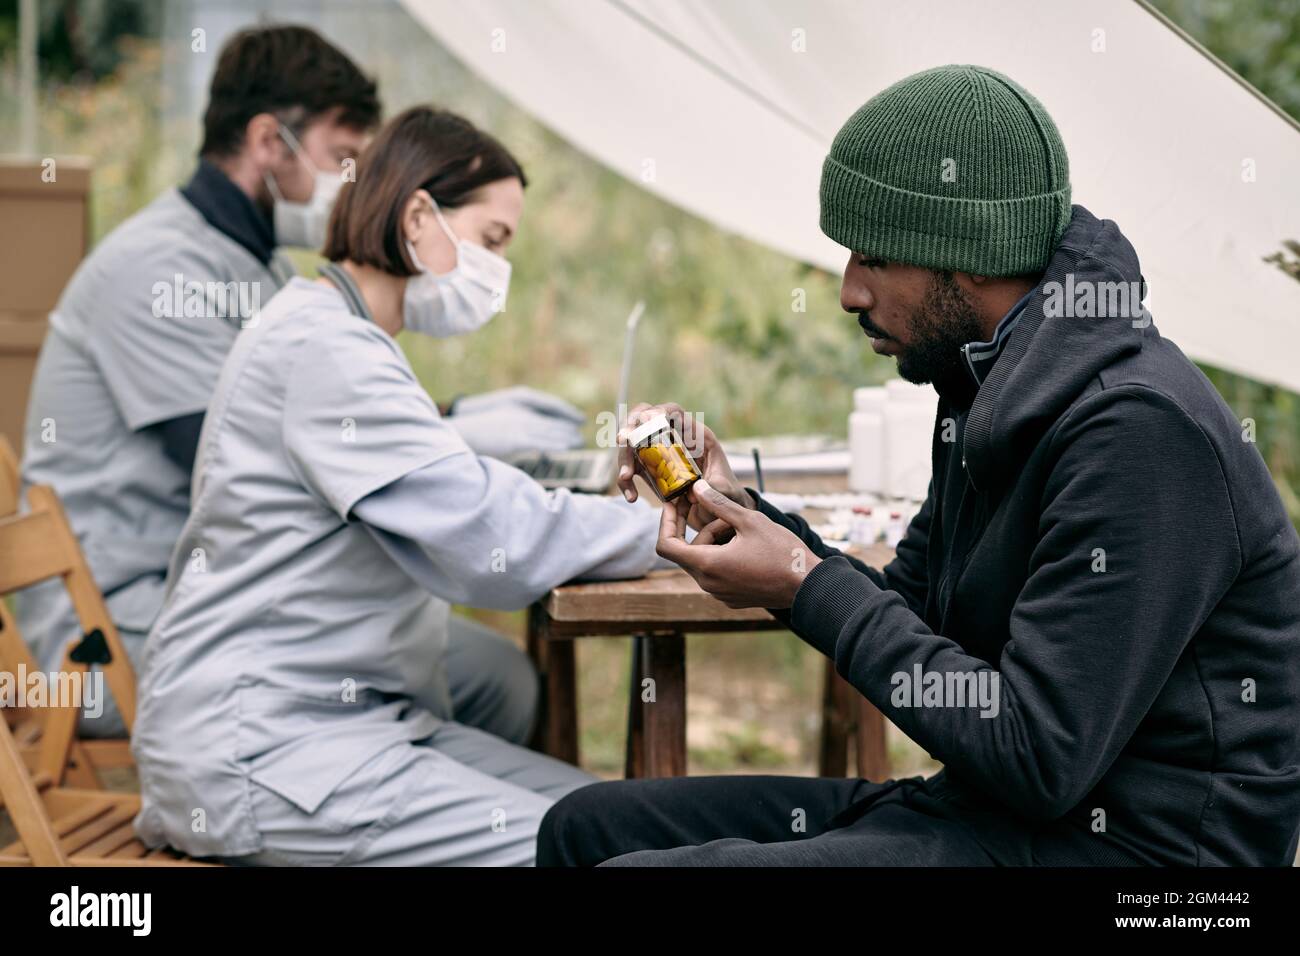 Serious junge schwarze Flüchtling Mann im Hut sitzt am Tisch der Mitarbeiter im Gesundheitswesen und lesen Tag der Pille Flasche, während sie kostenlose Medizin Stockfoto